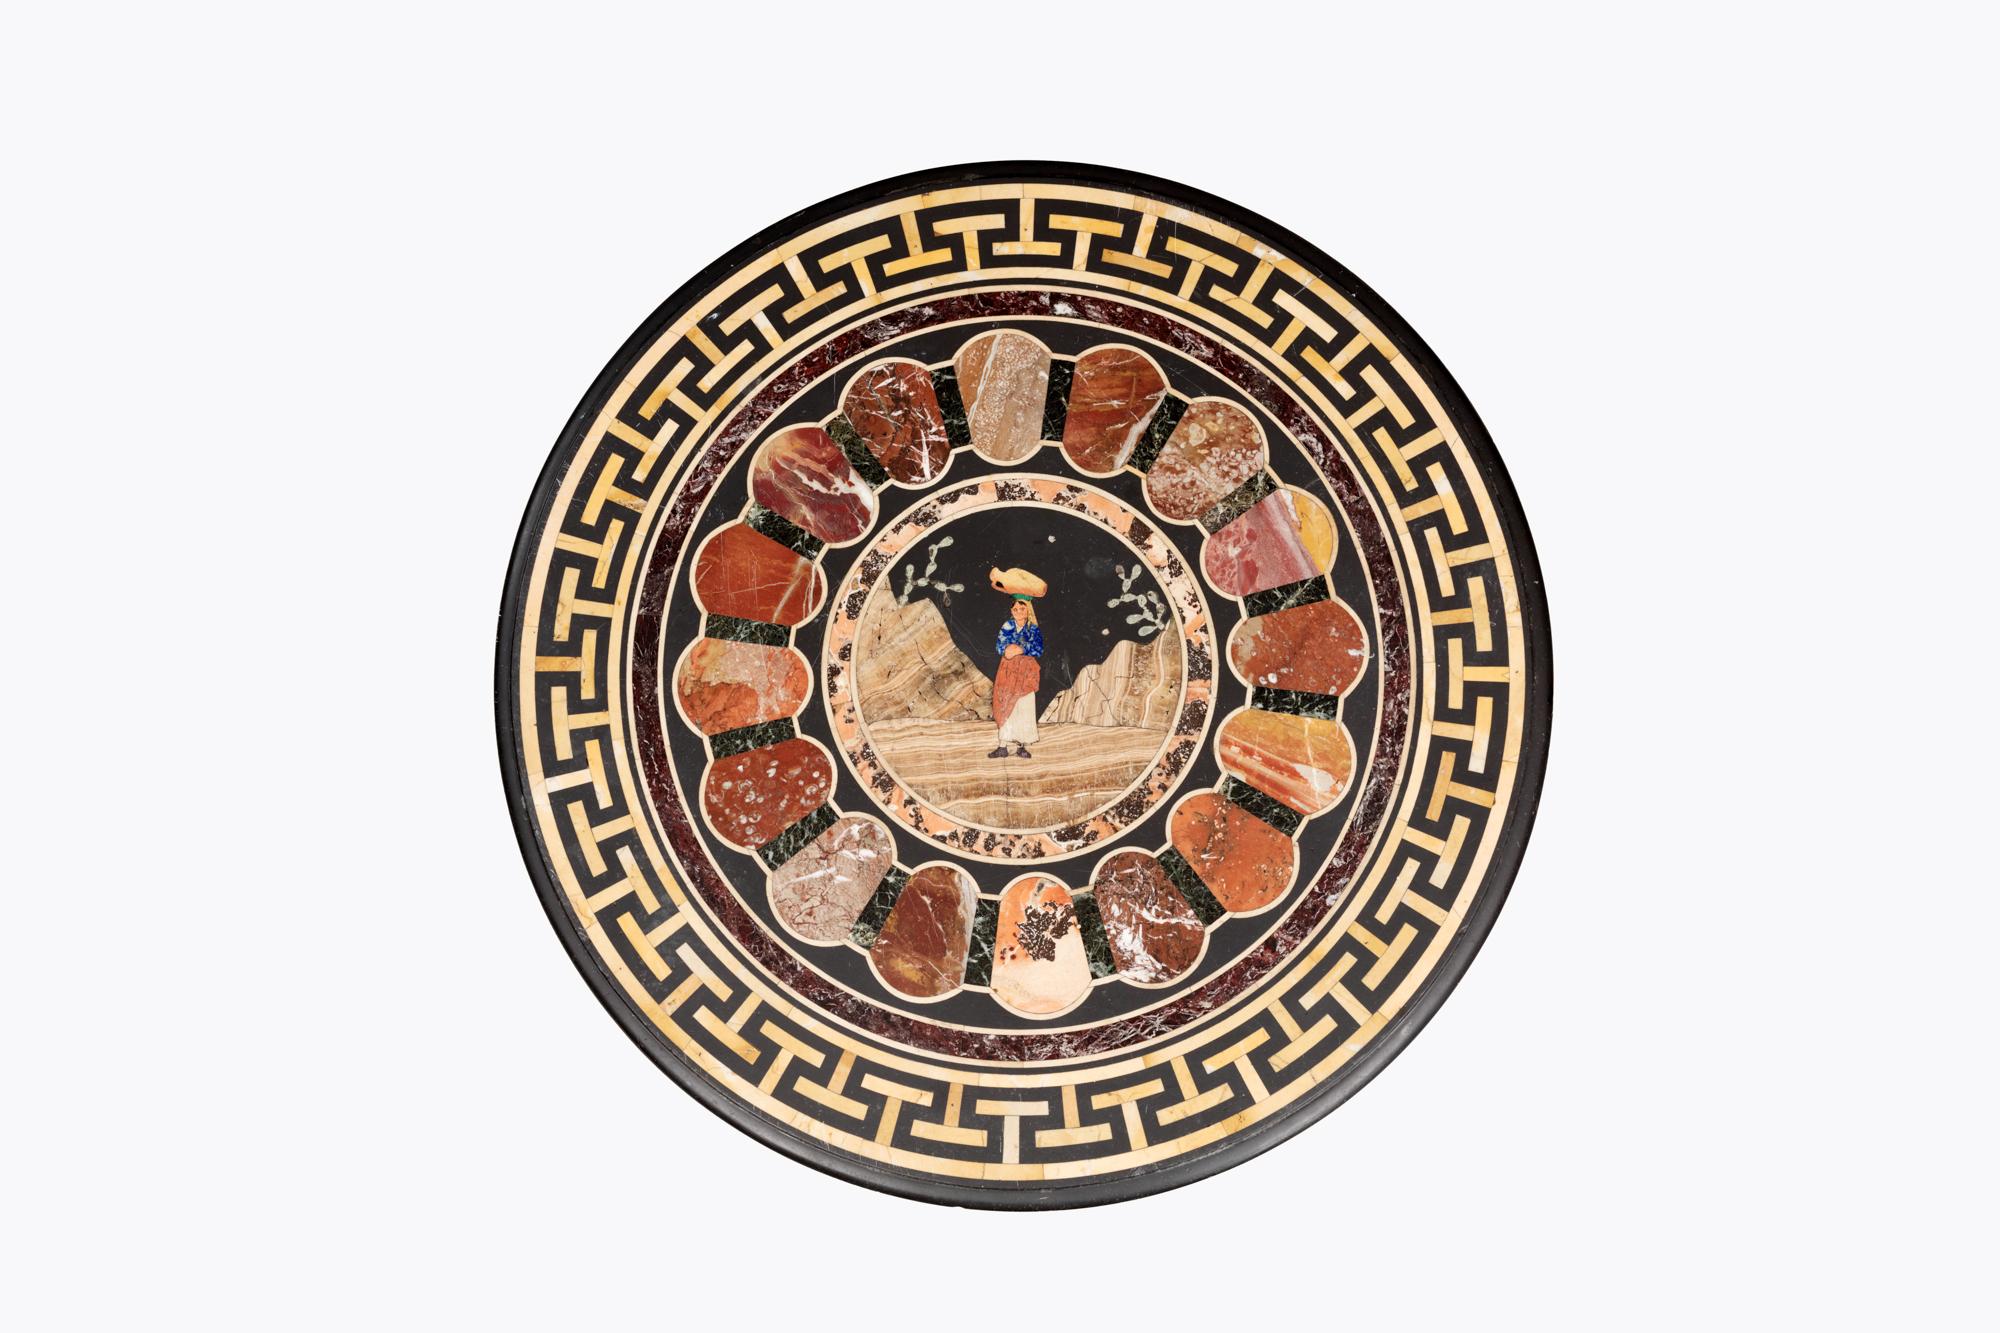 Messingmontierter runder Couchtisch mit Speimanplatte aus dem 19. Jahrhundert. Die zentrale Tafel aus Edelstein stellt eine Szene mit einem Wasserträger in einer Berglandschaft dar. Dieser ist von einem Ring aus kostbaren Marmormustern umgeben und